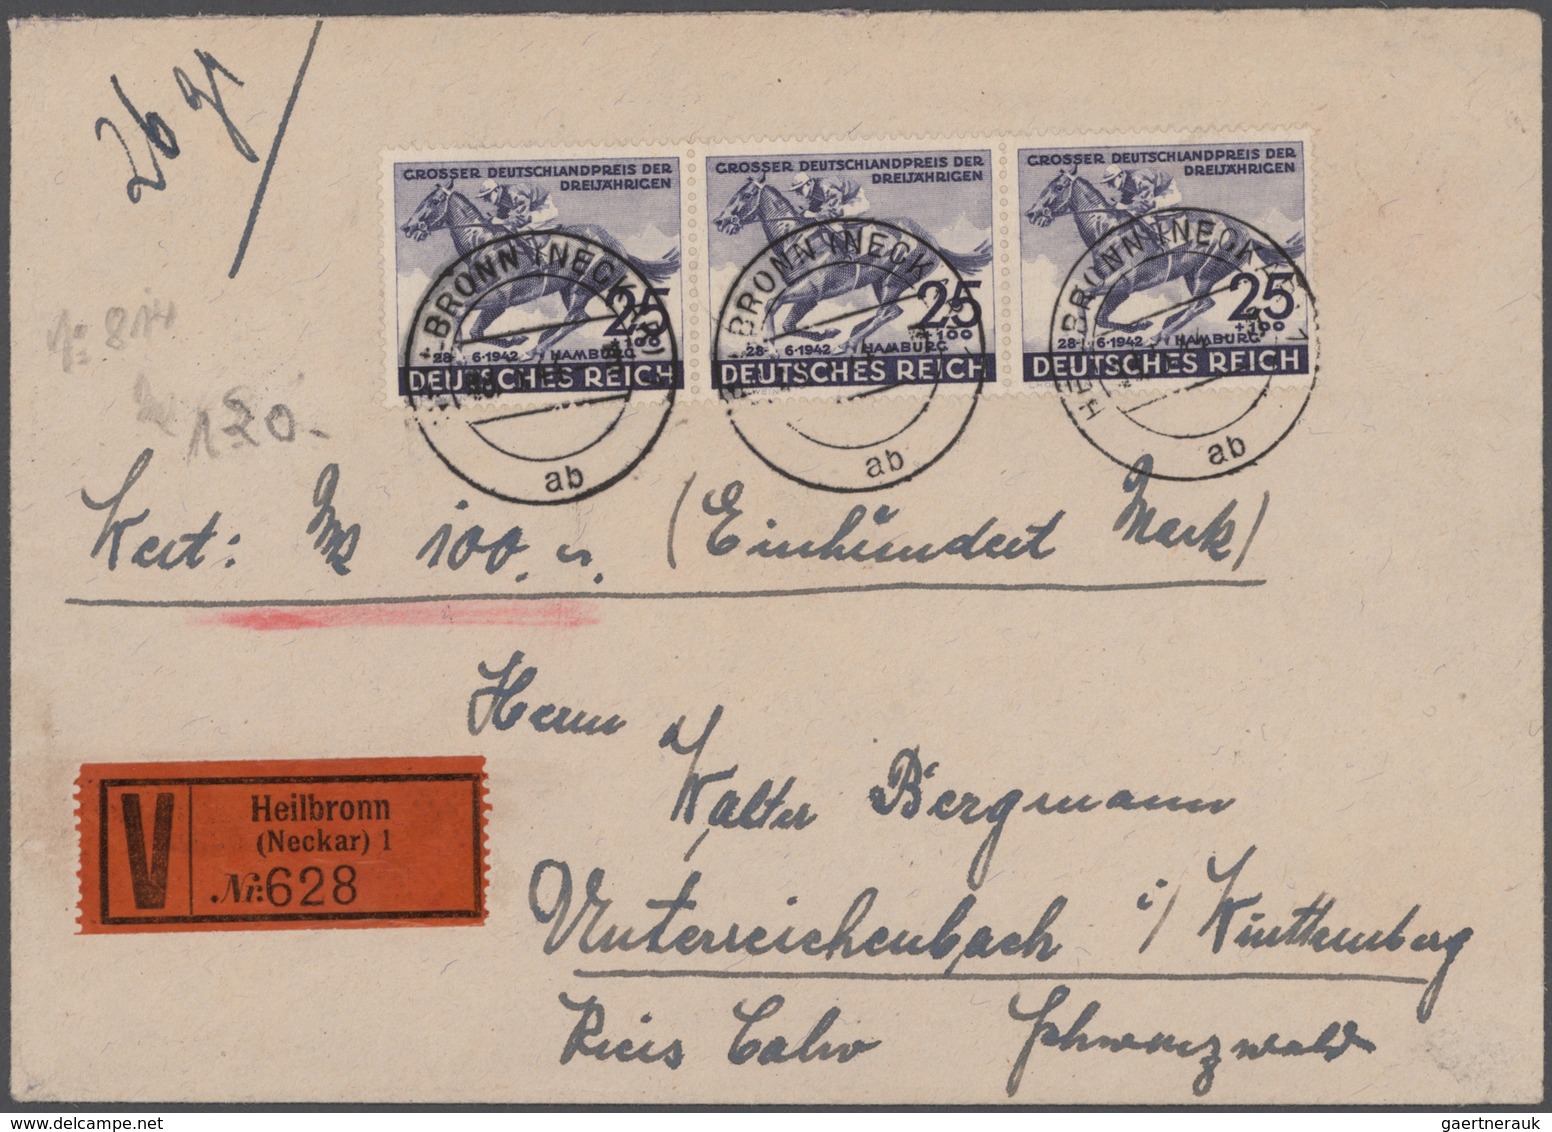 Deutsches Reich: 1872-1944, toller Bestand mit über 500 Briefen, Karten, Ganzsachen und Belegen, dab